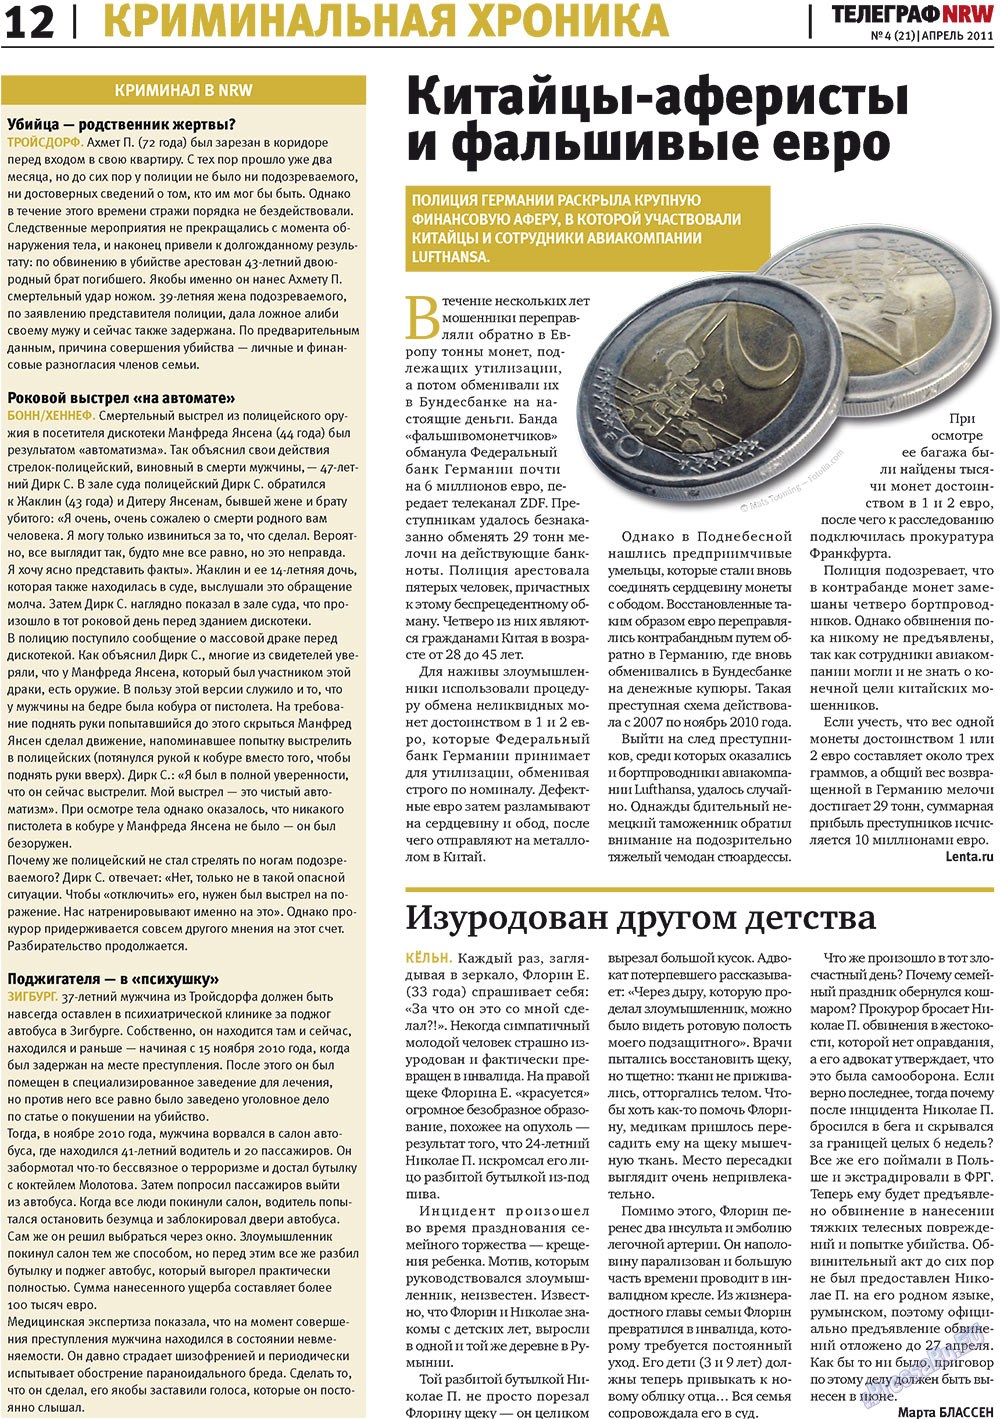 Телеграф NRW (газета). 2011 год, номер 4, стр. 12